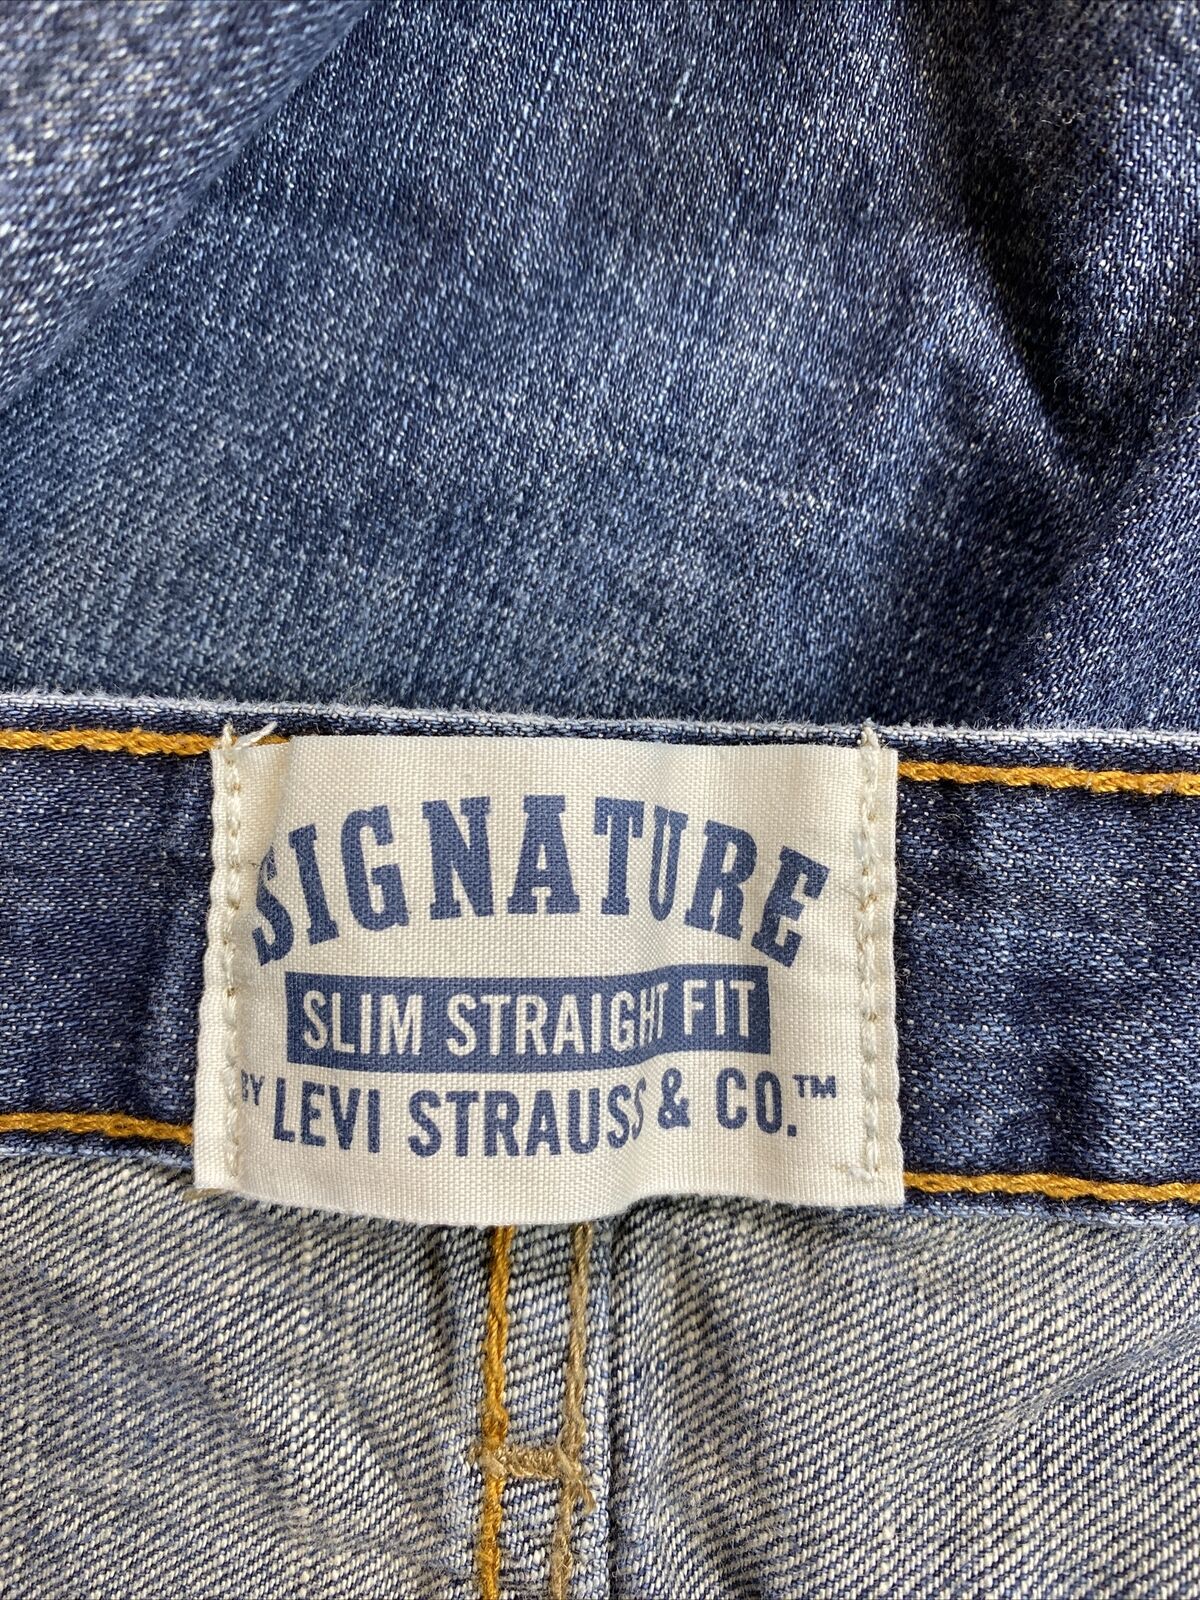 Levis Signature Men's Medium Wash Slim Straight Denim Jeans - 38x32